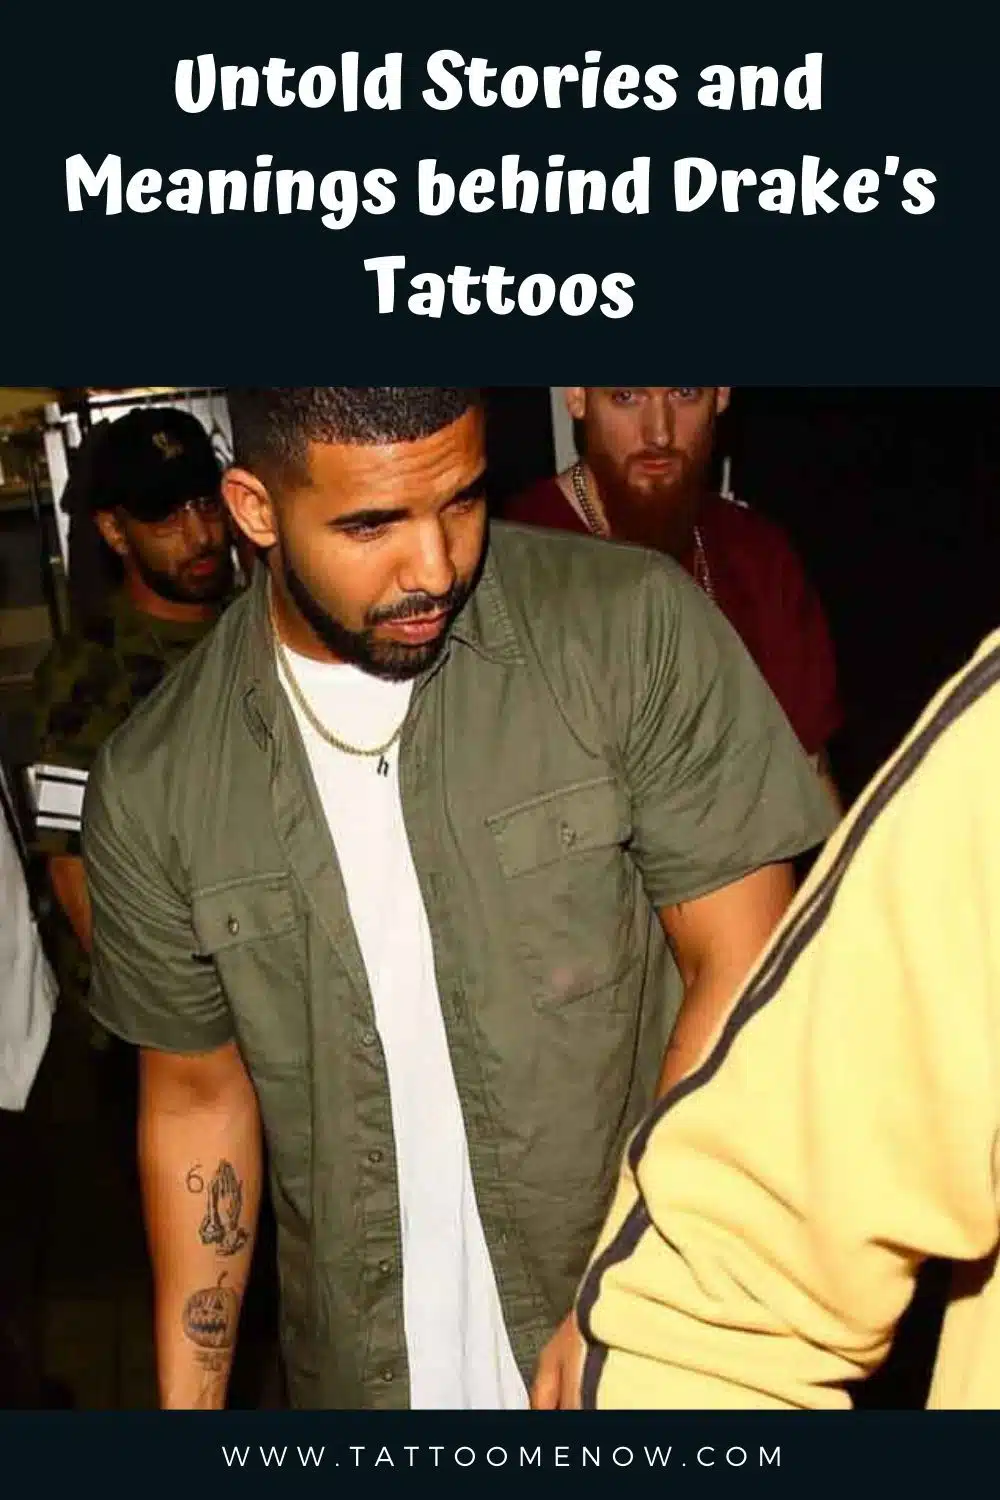 Drakes praying hands tattoo